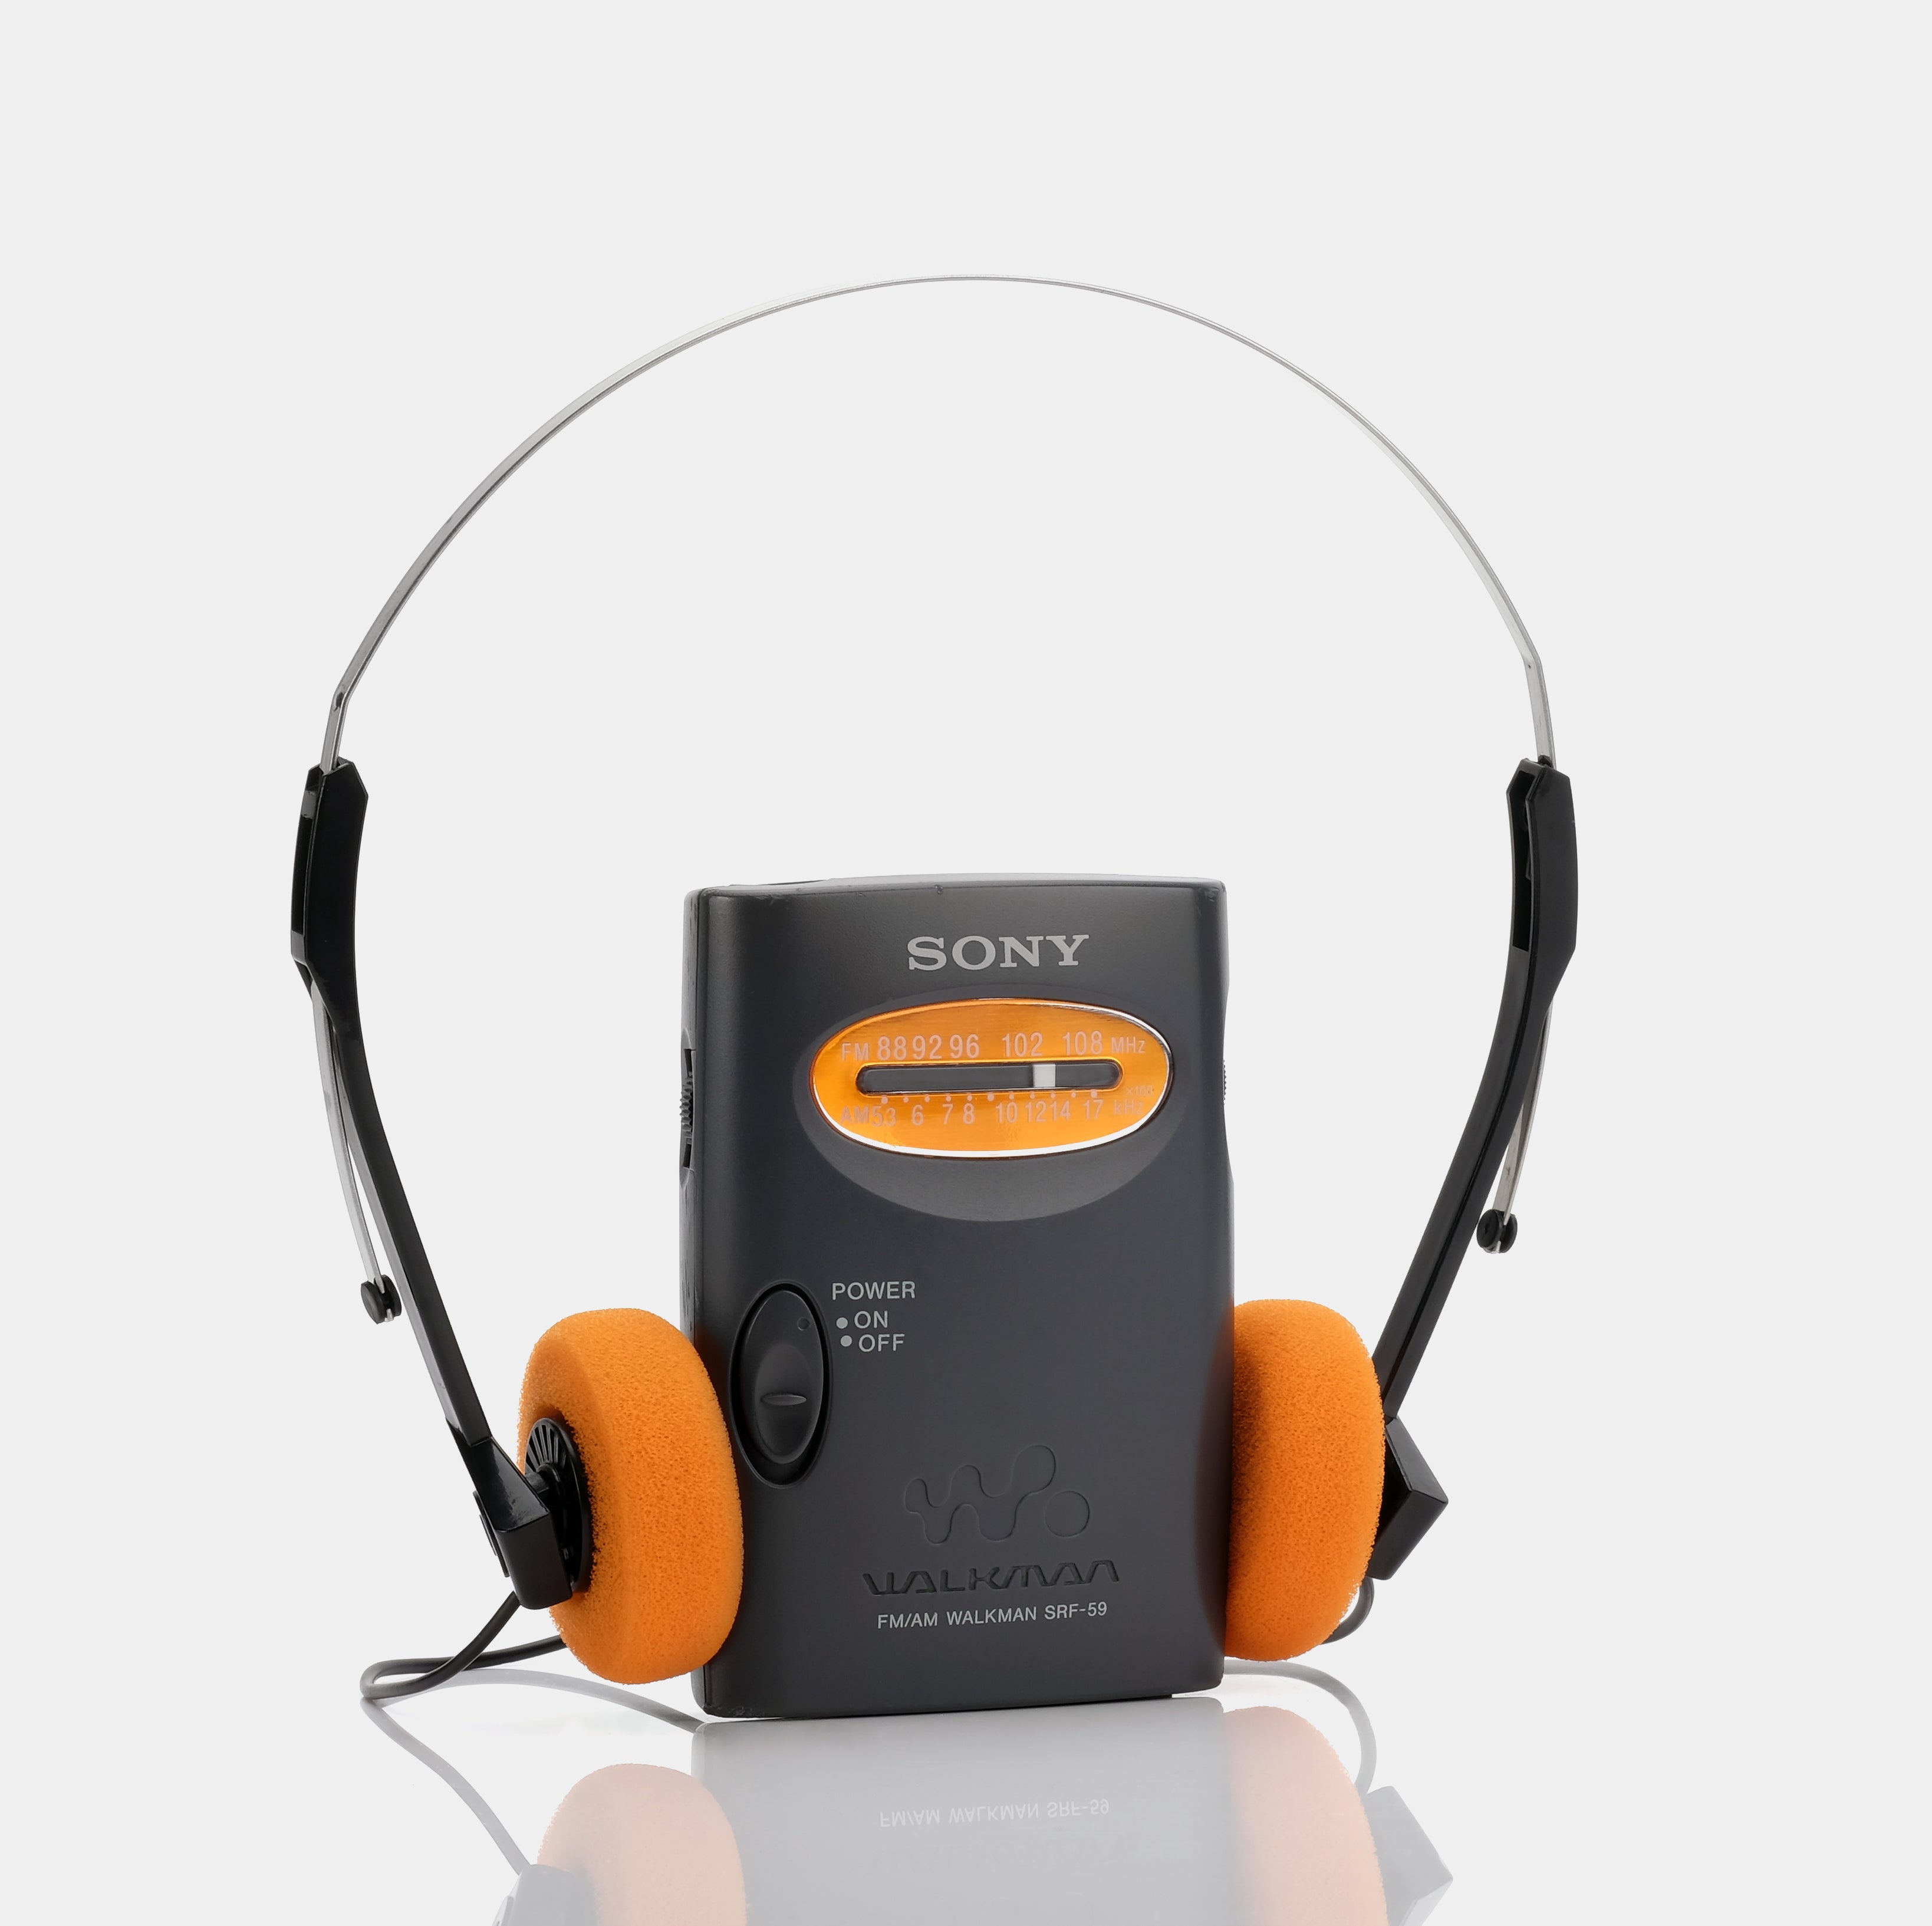 Sony Walkman SRF-59 AM/FM Portable Radio